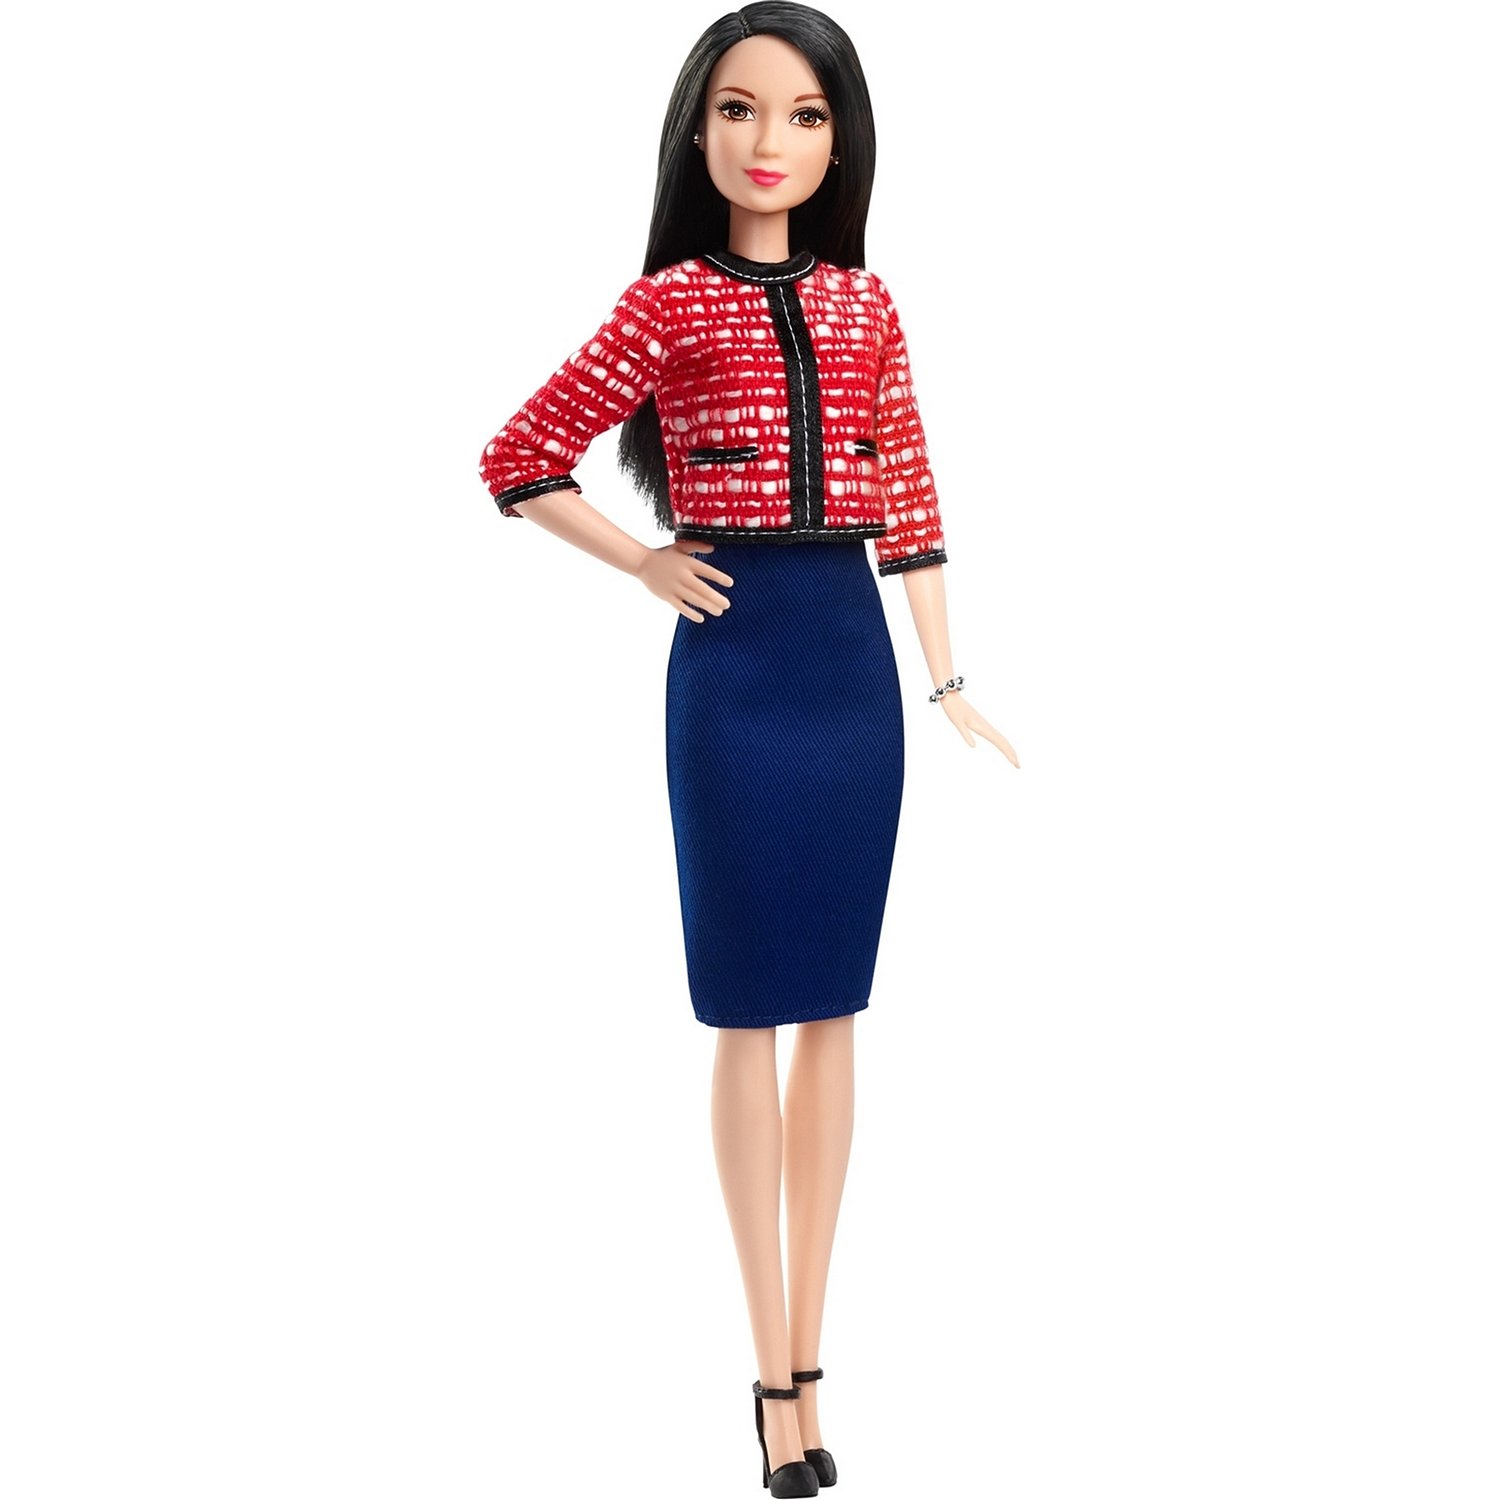 Кукла Barbie Кем быть? Политический кандидат, 29 см, GFX28